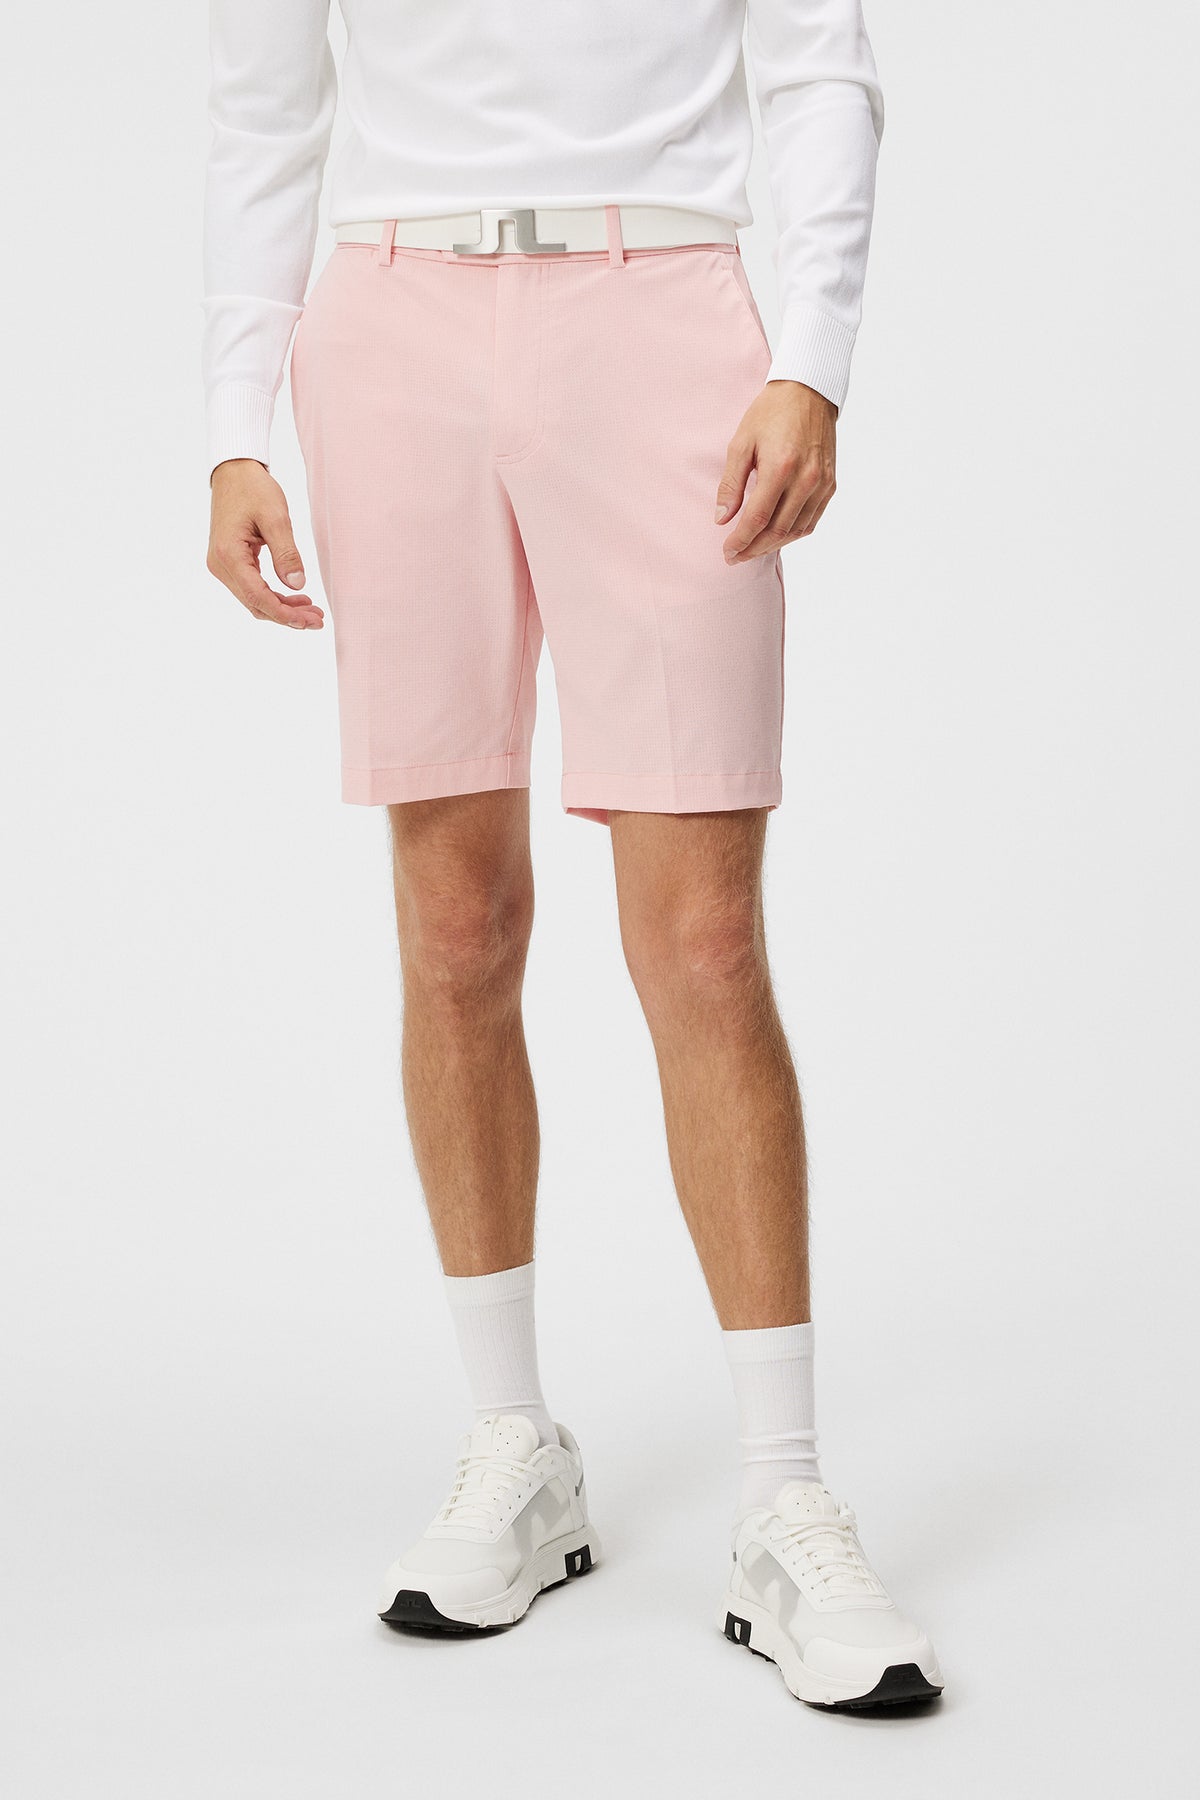 Vent Tight Shorts / Powder Pink